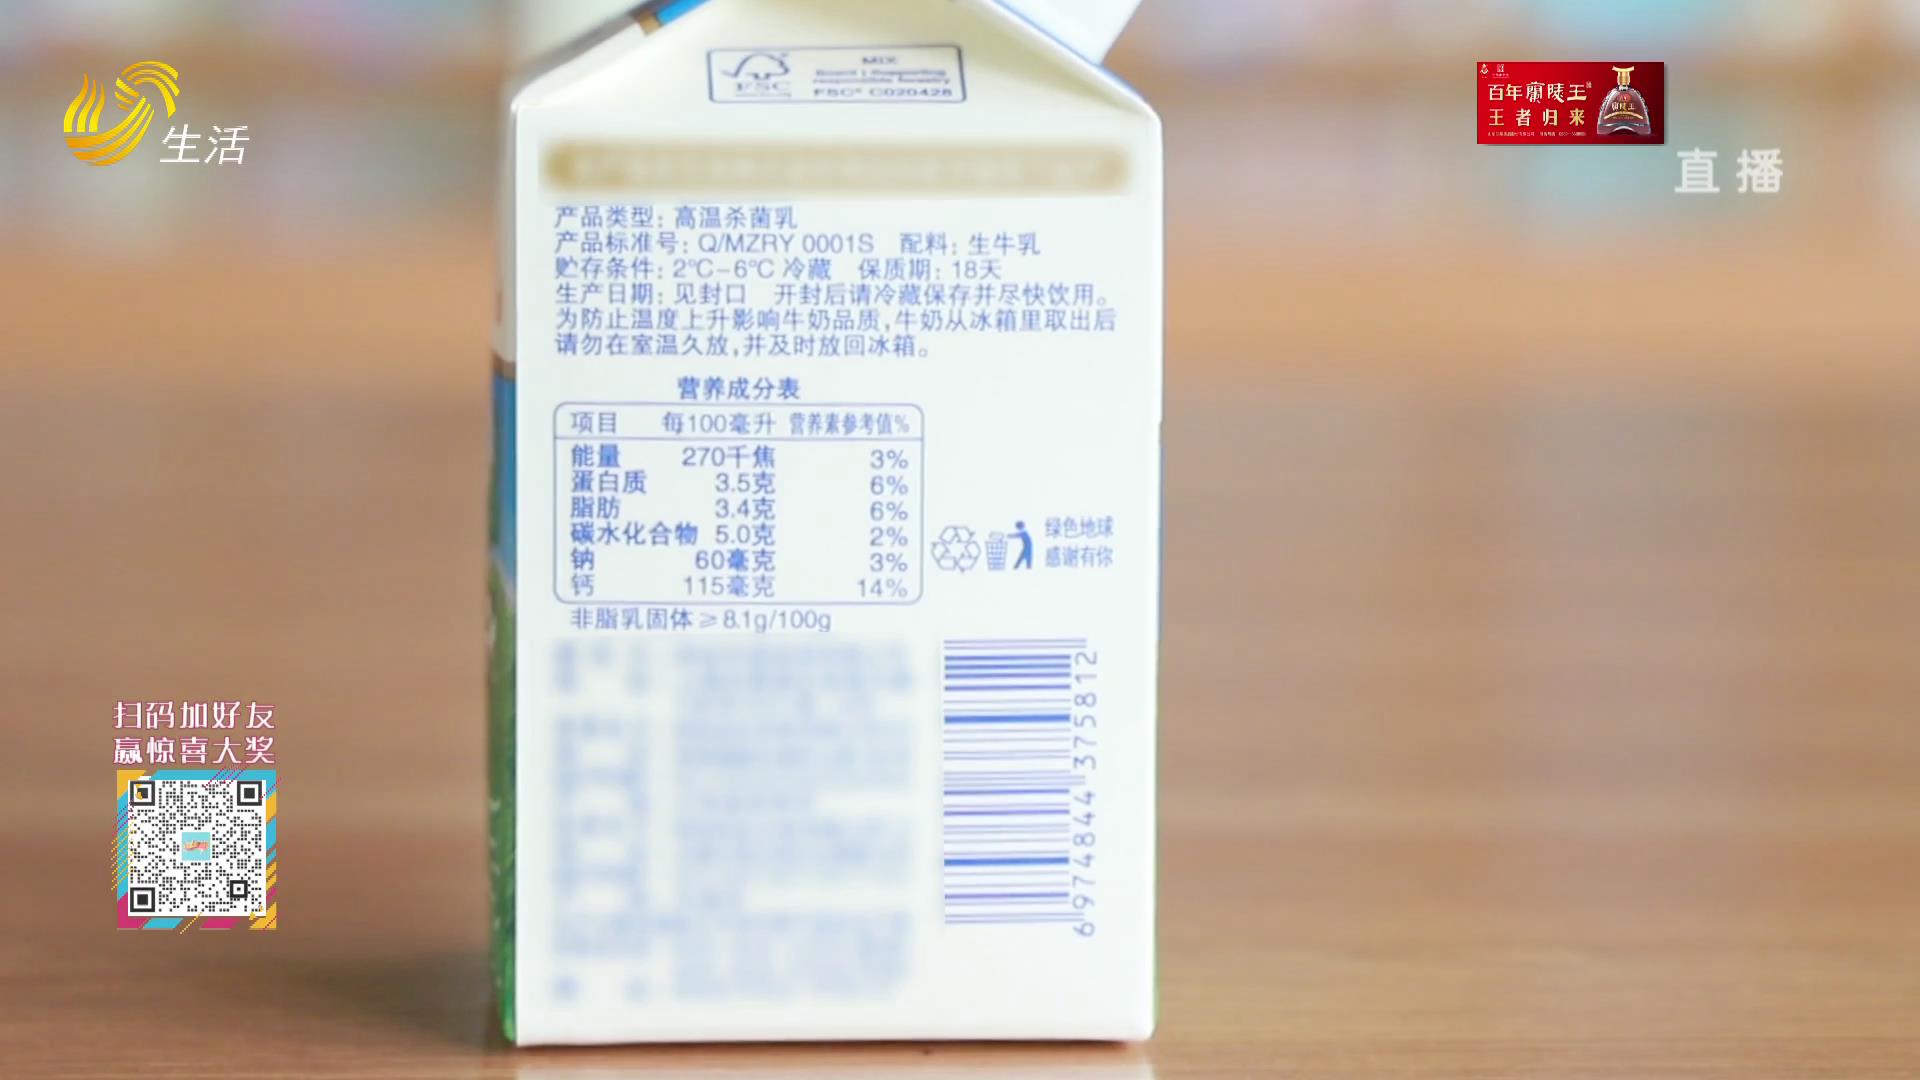 特浓牛奶比普通牛奶营养更丰富吗？